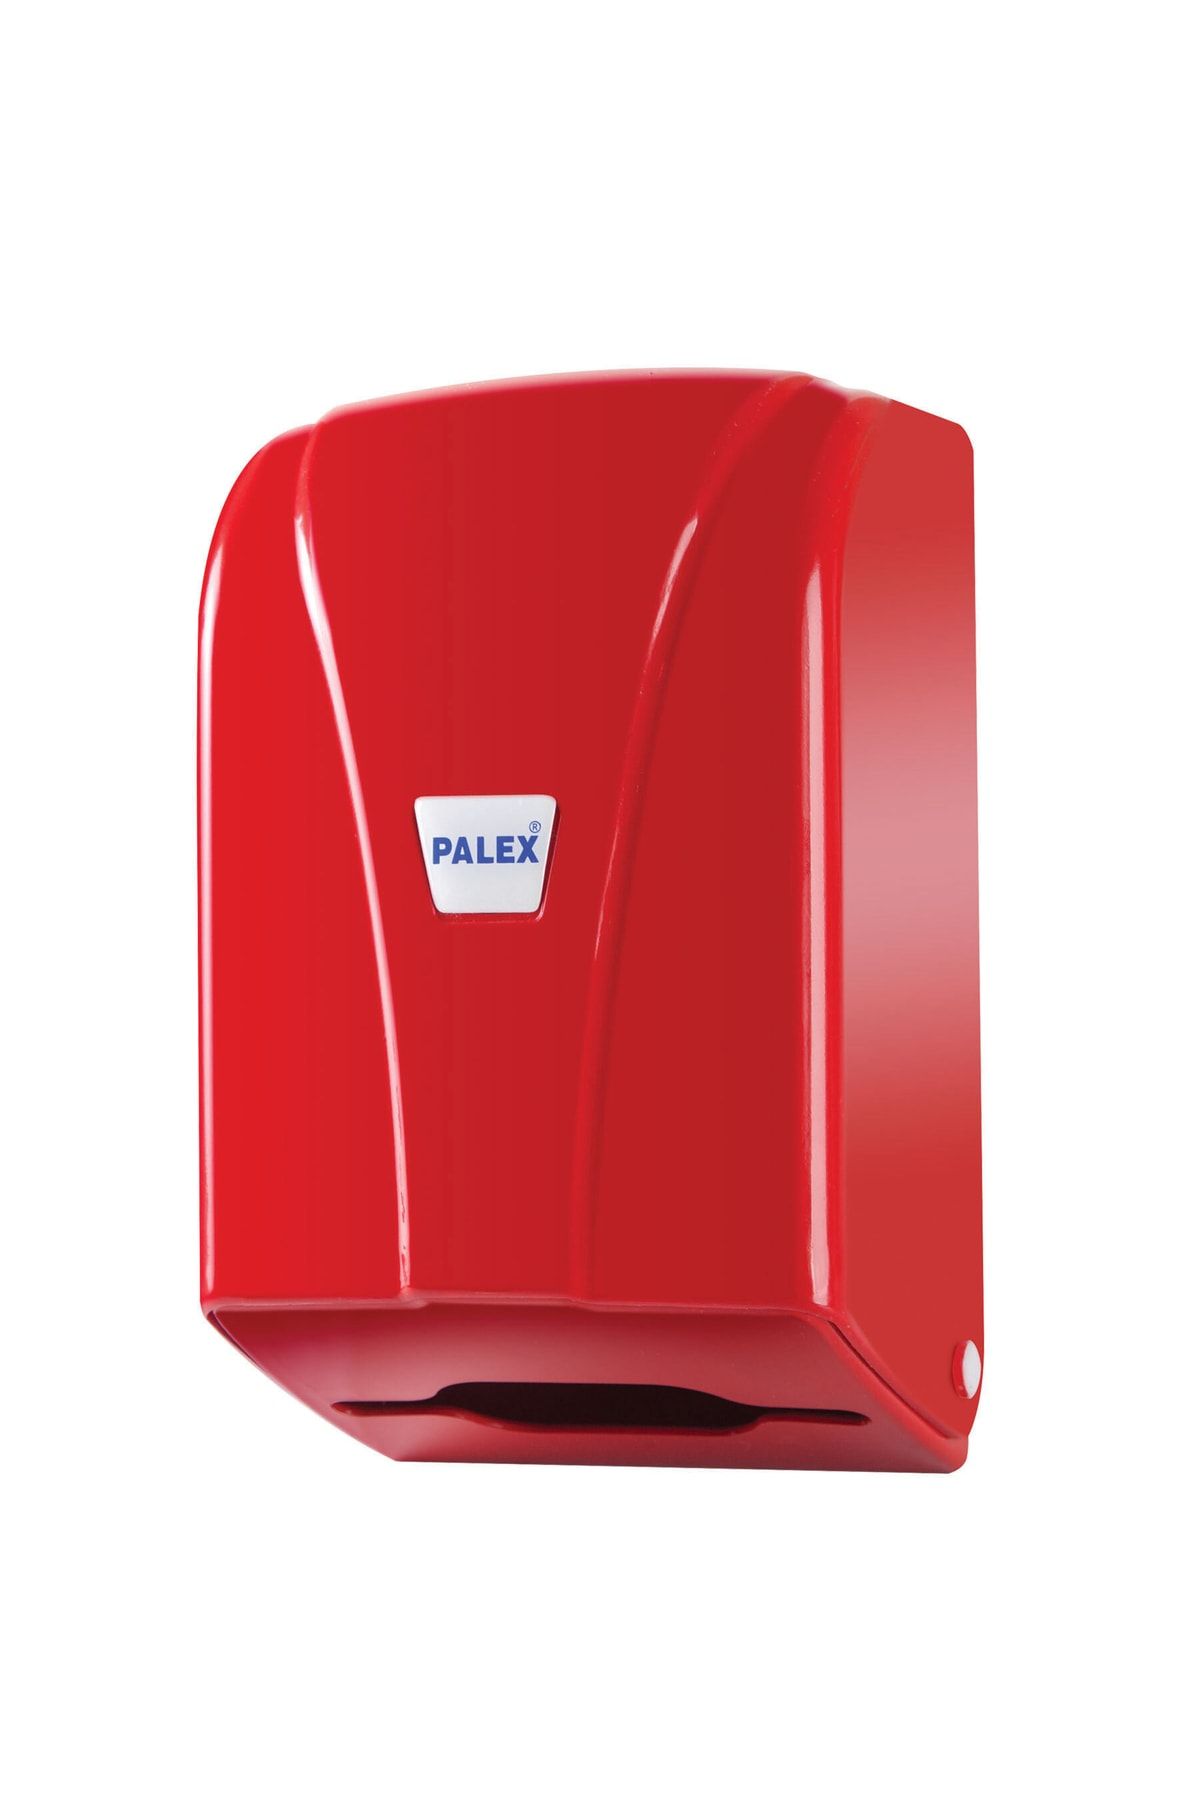 Palex (ün-ev) C Katlama Tuvalet Kağıtlığı (tuvalet Kağıt Dispenseri) Kırmızı 3438-b